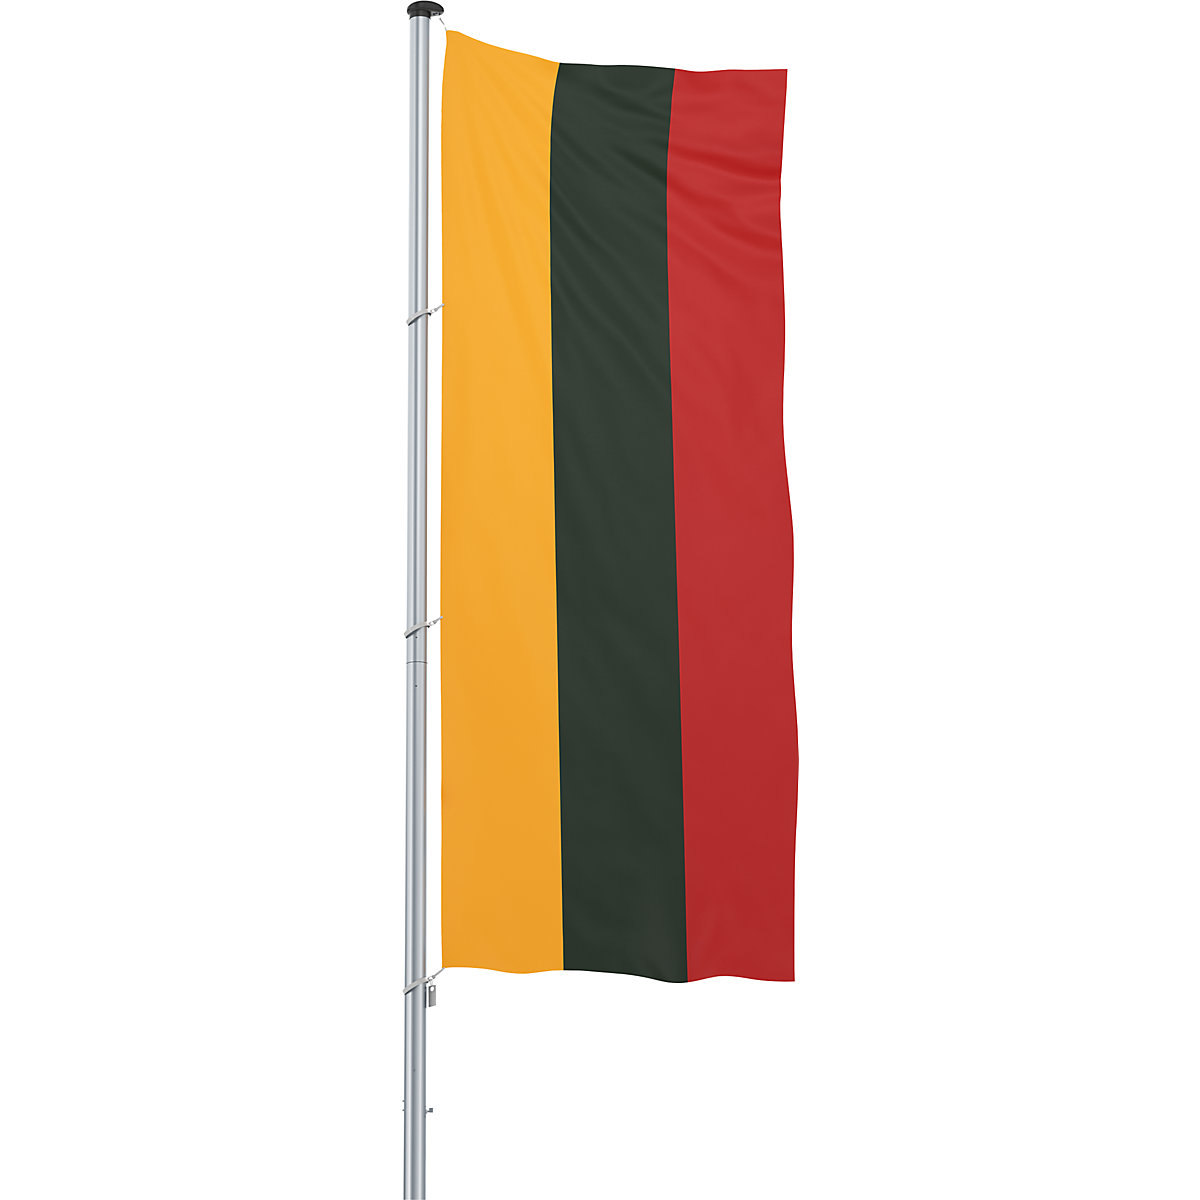 Hijsvlag/landvlag – Mannus, formaat 1,2 x 3 m, Litouwen-28